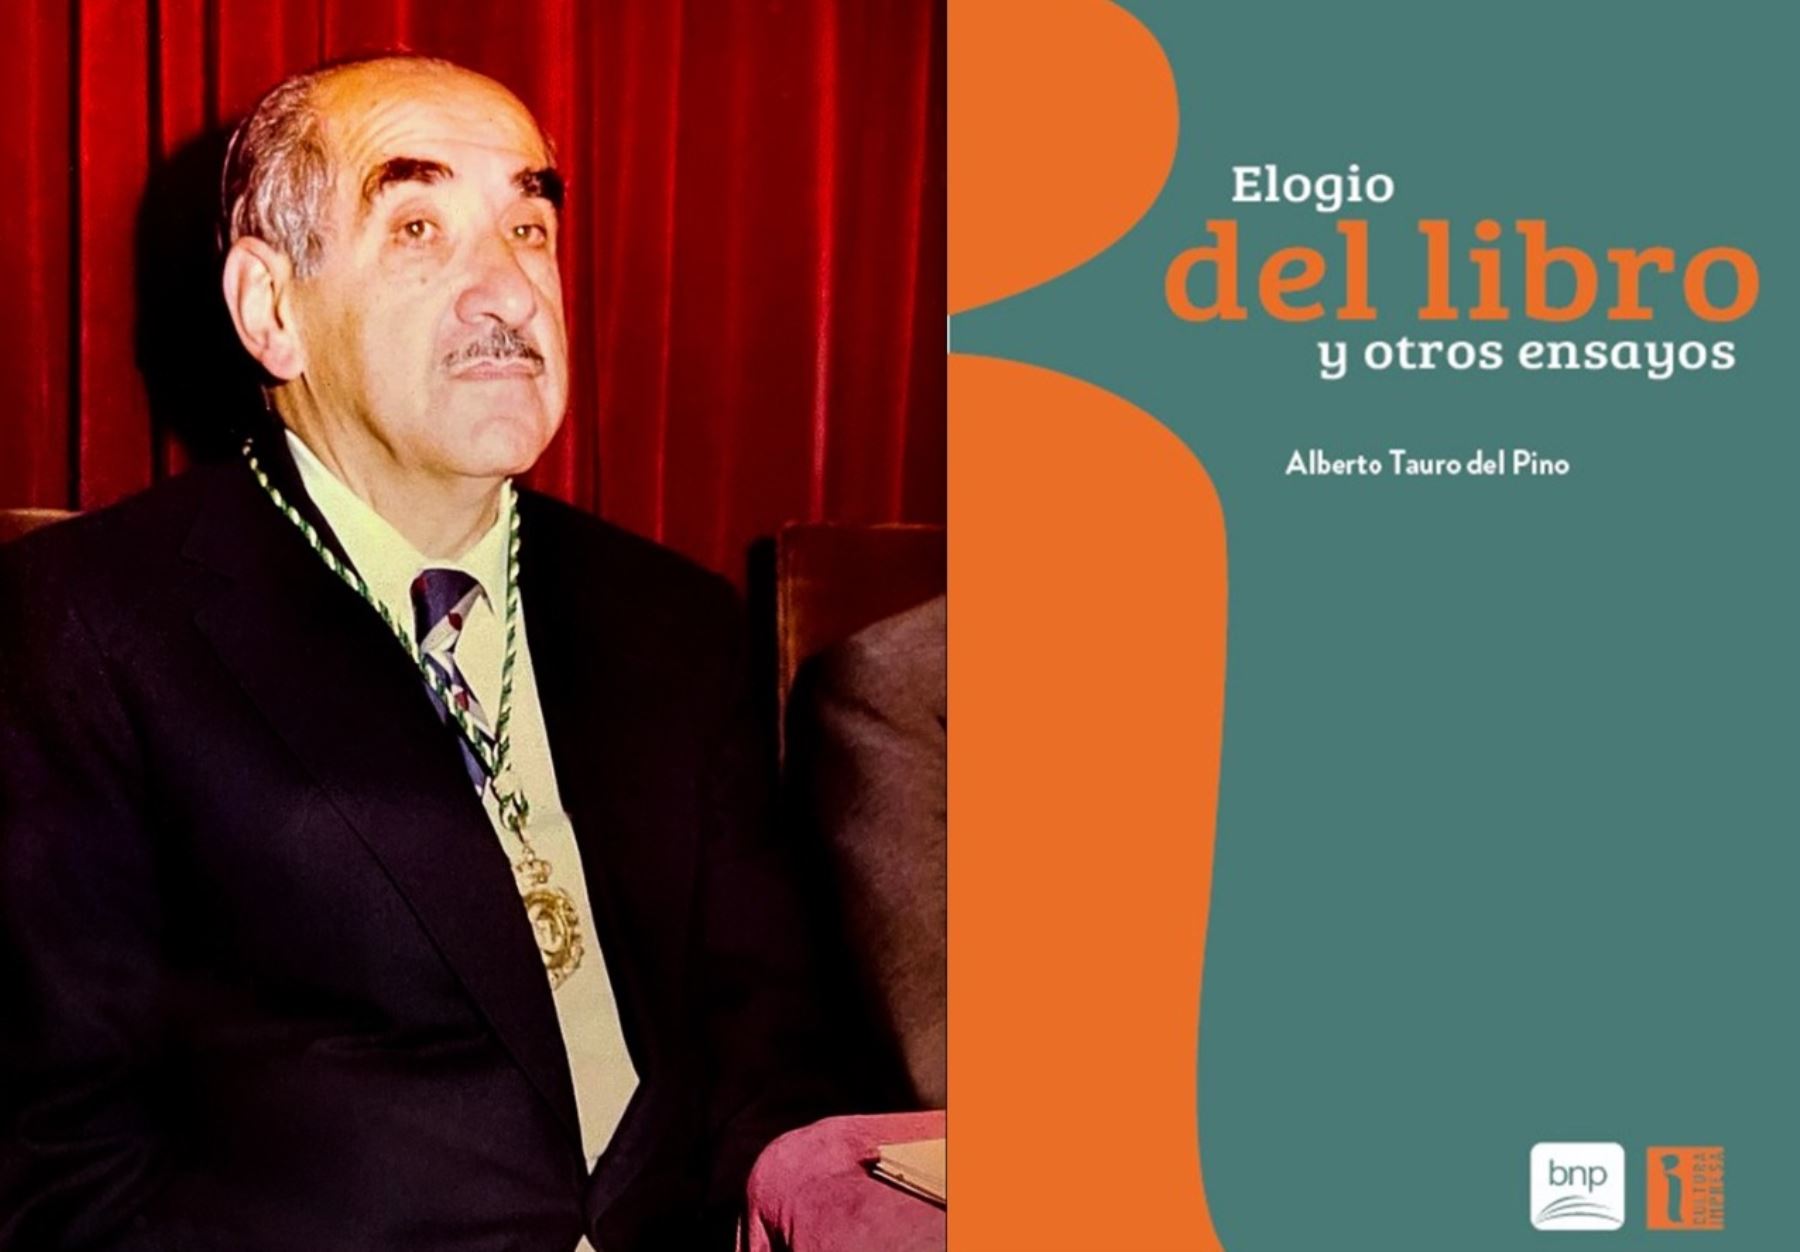 BNP presentará la publicación "Elogio del libro y otros ensayos" de Alberto Tauro del Pino.